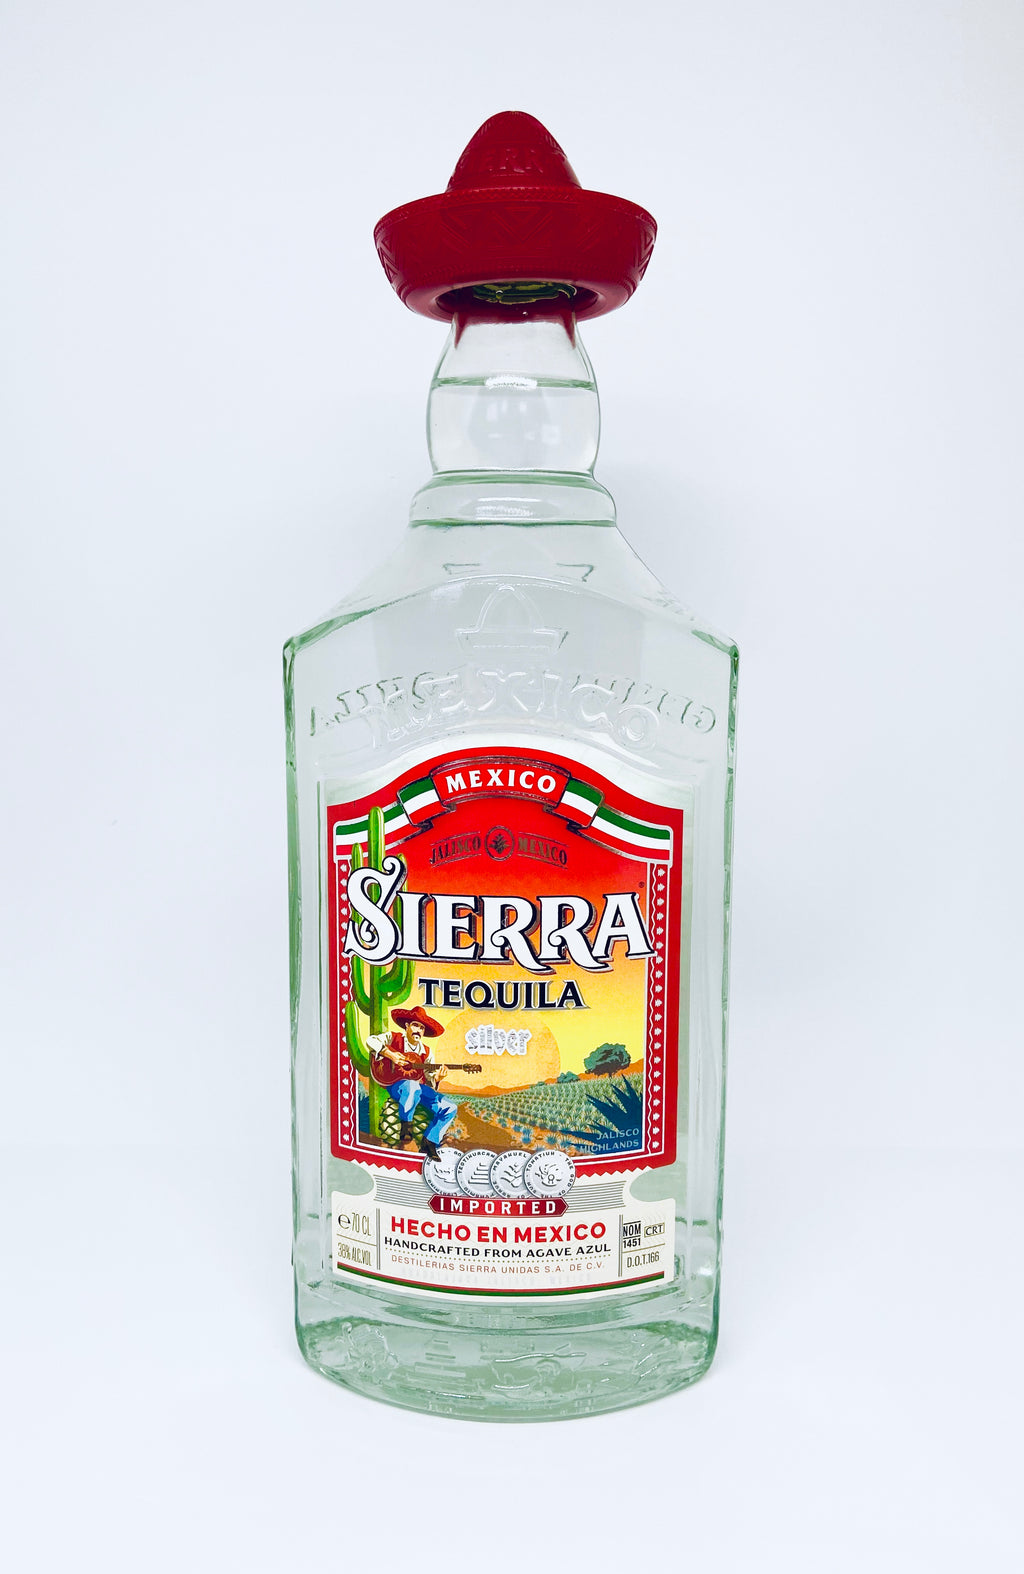 Sierra Tequila Silver 38%, 70cl